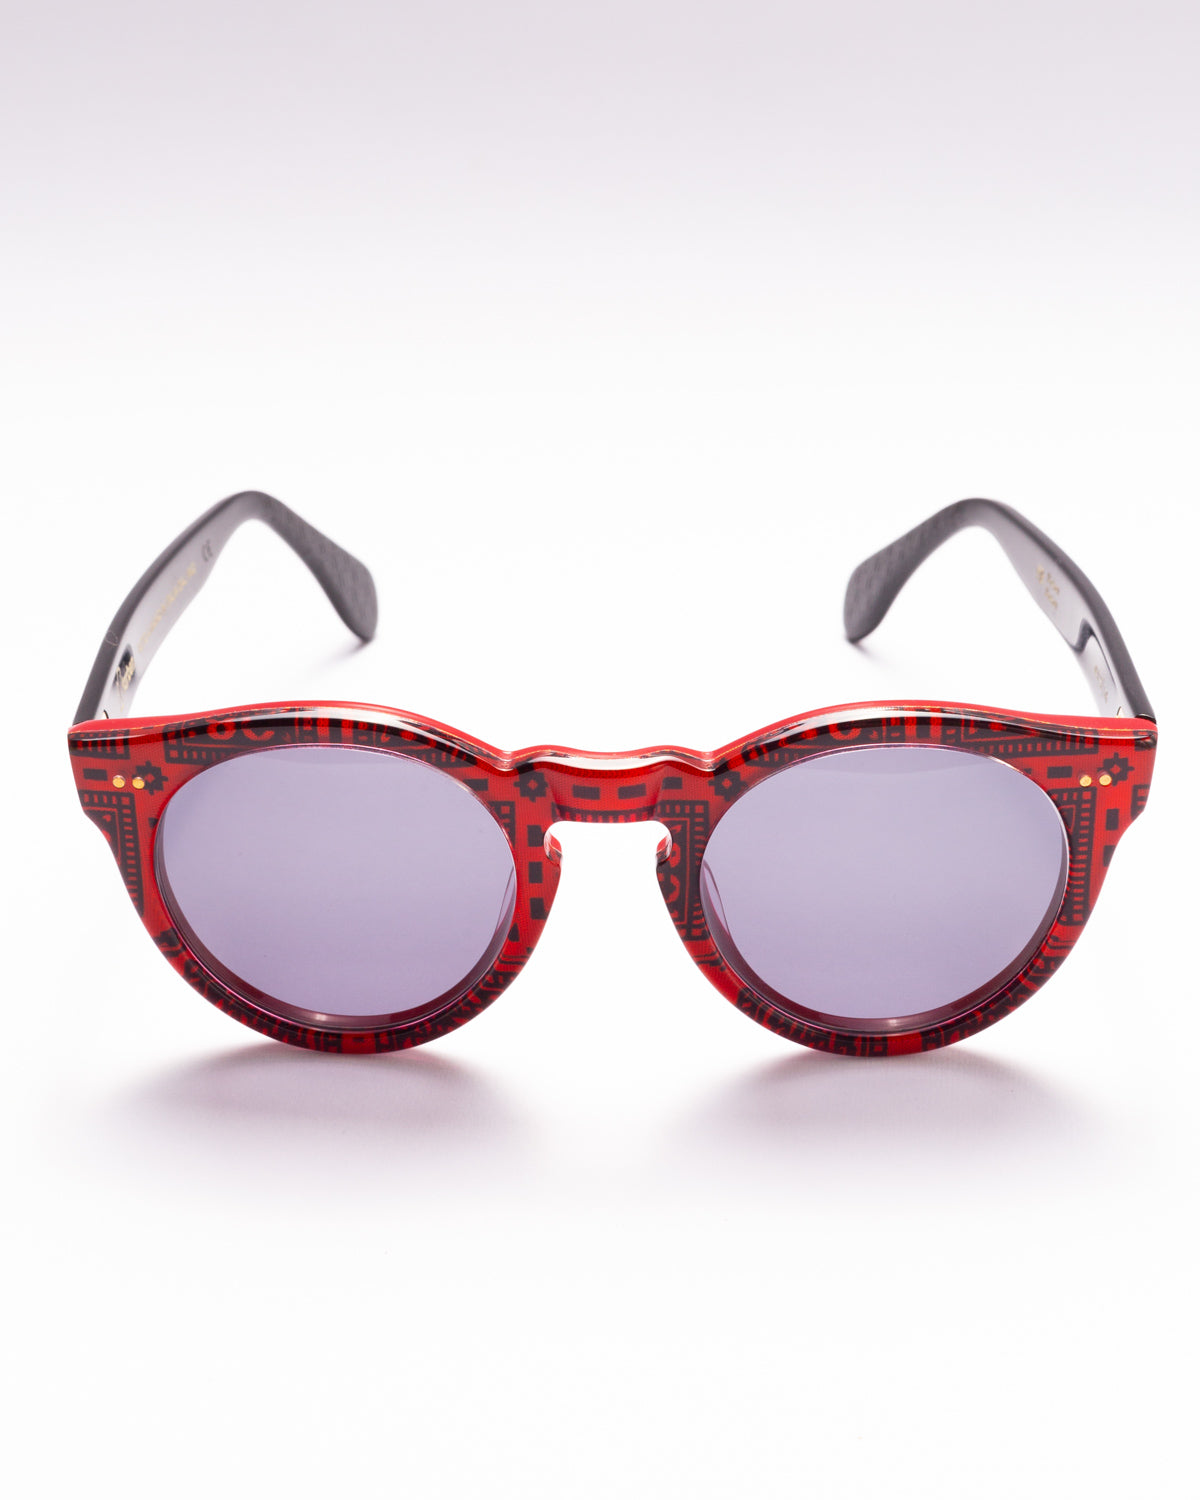 Farben F9 - 001 sunglasses